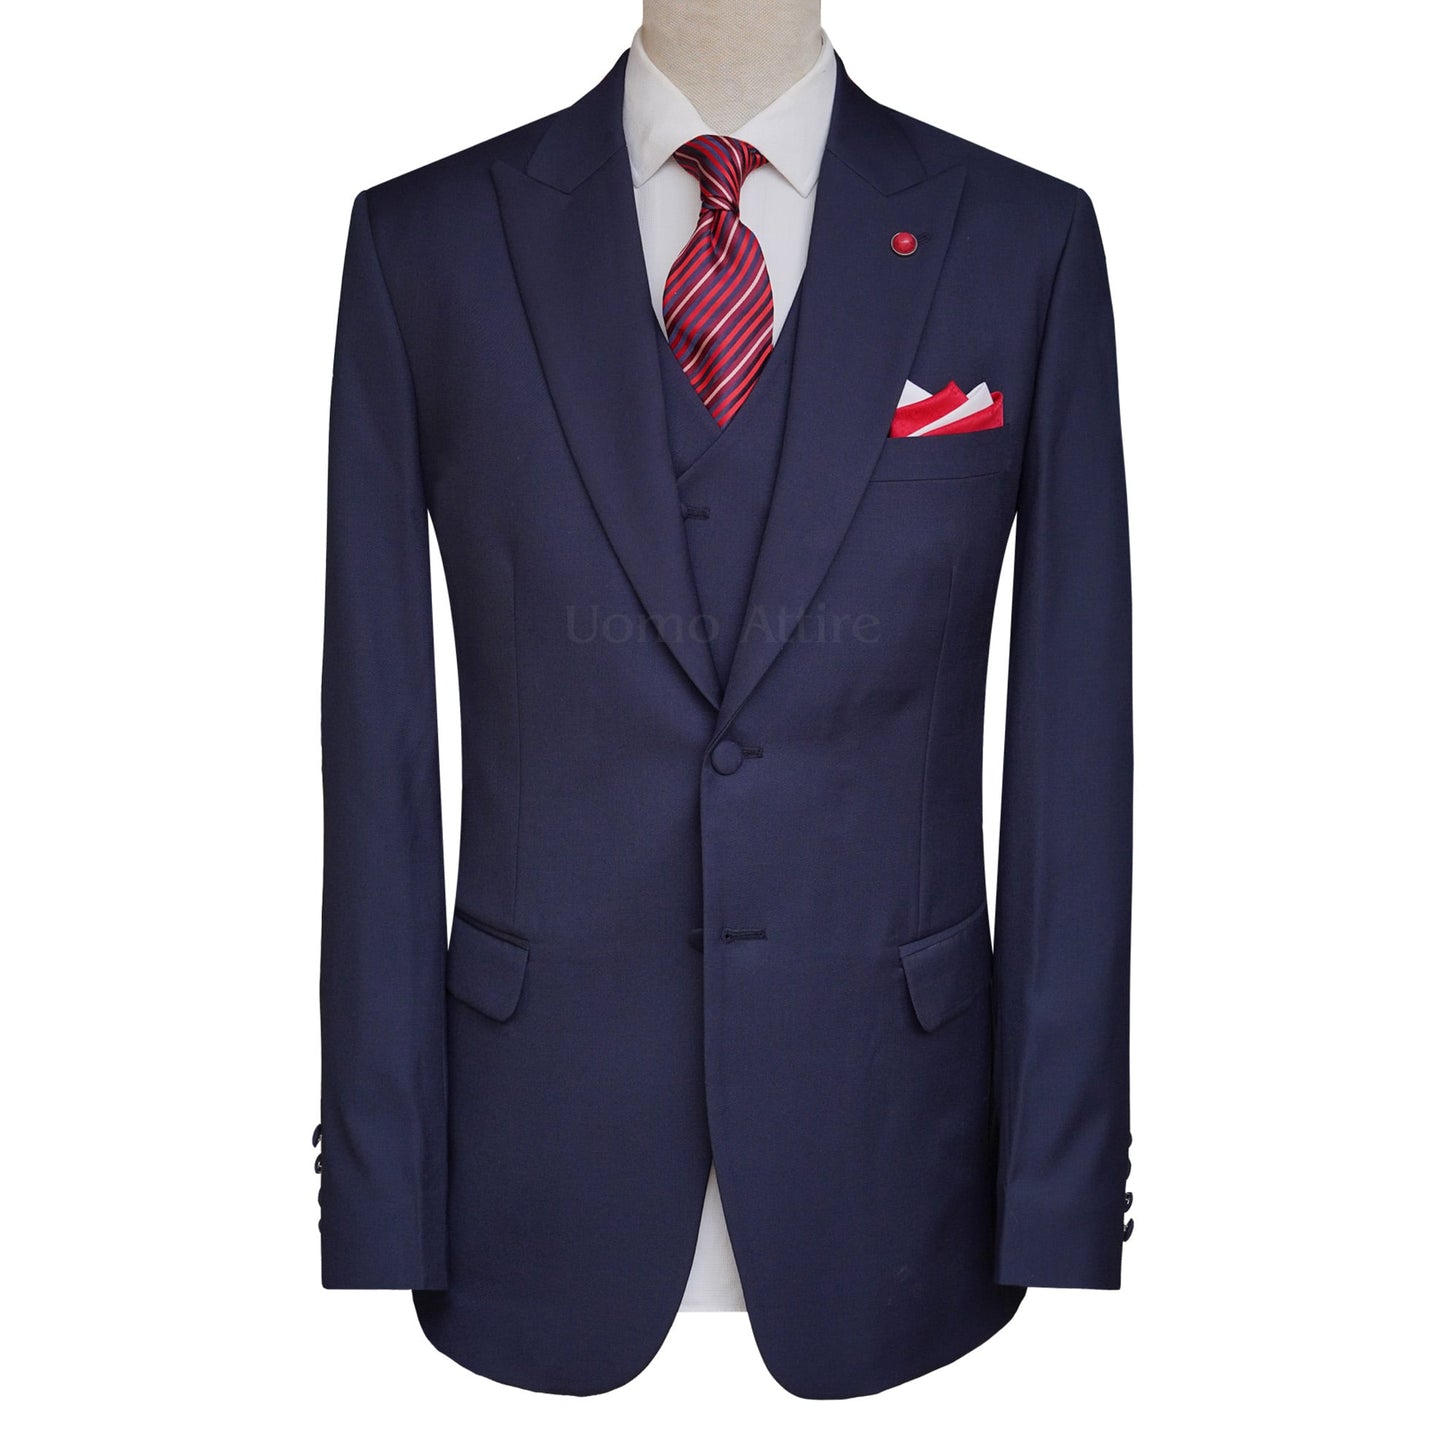 Designer Tuxedos - Luxury Suits for Men | DIOR